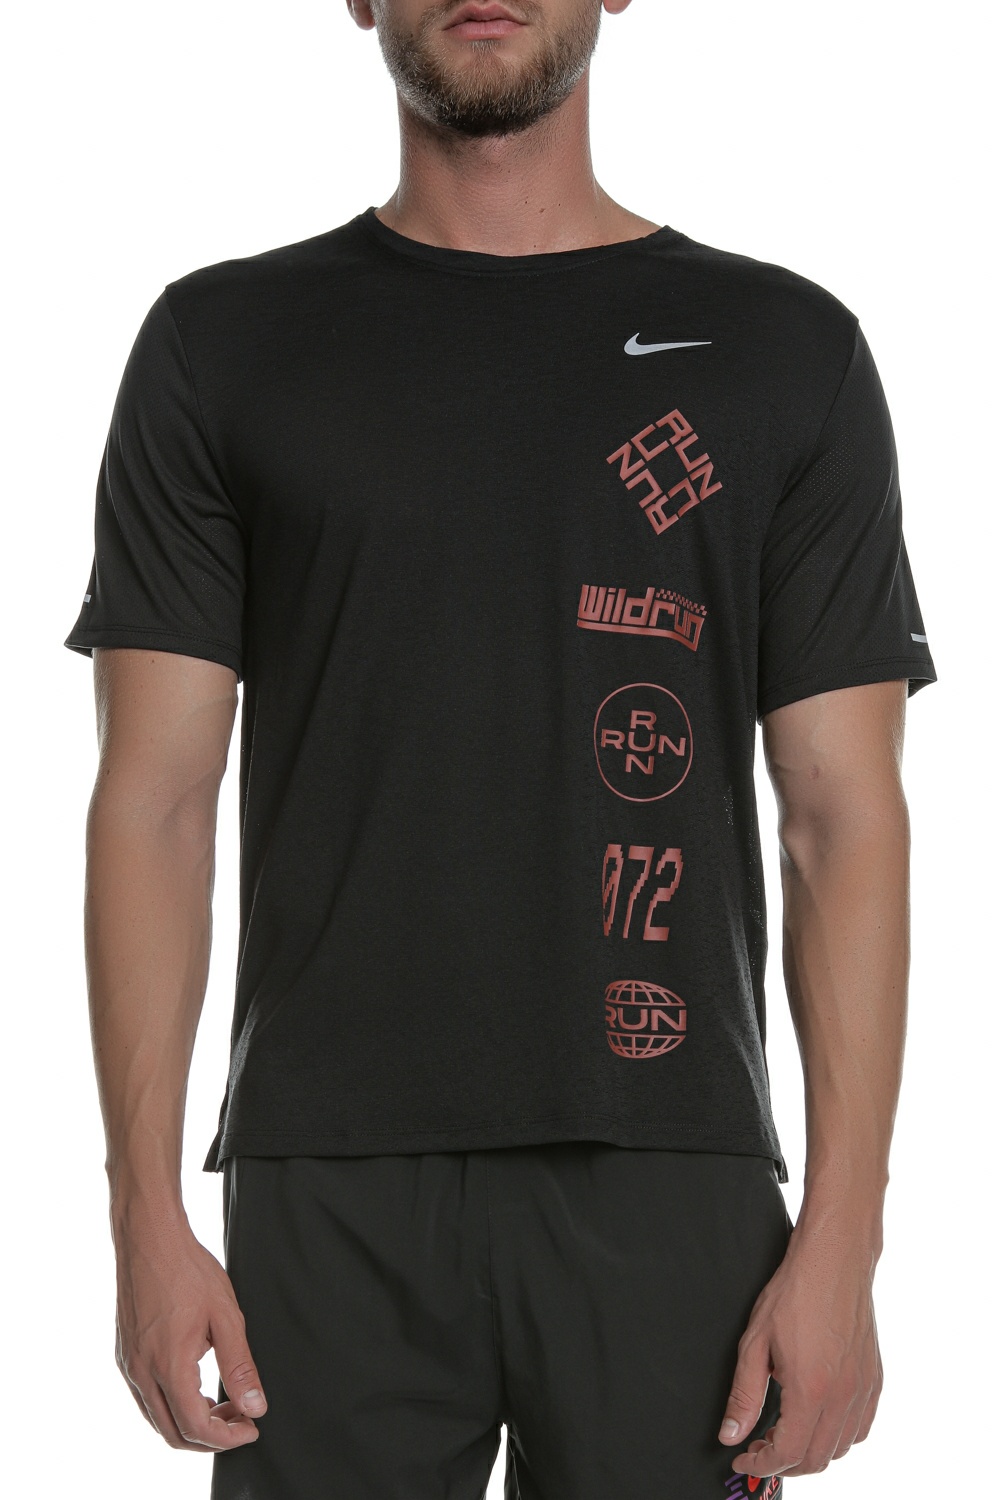 Ανδρικά/Ρούχα/Αθλητικά/T-shirt NIKE - Ανδρική μπλούζα NIKE DF MILER TOP SS WR GX μαύρη